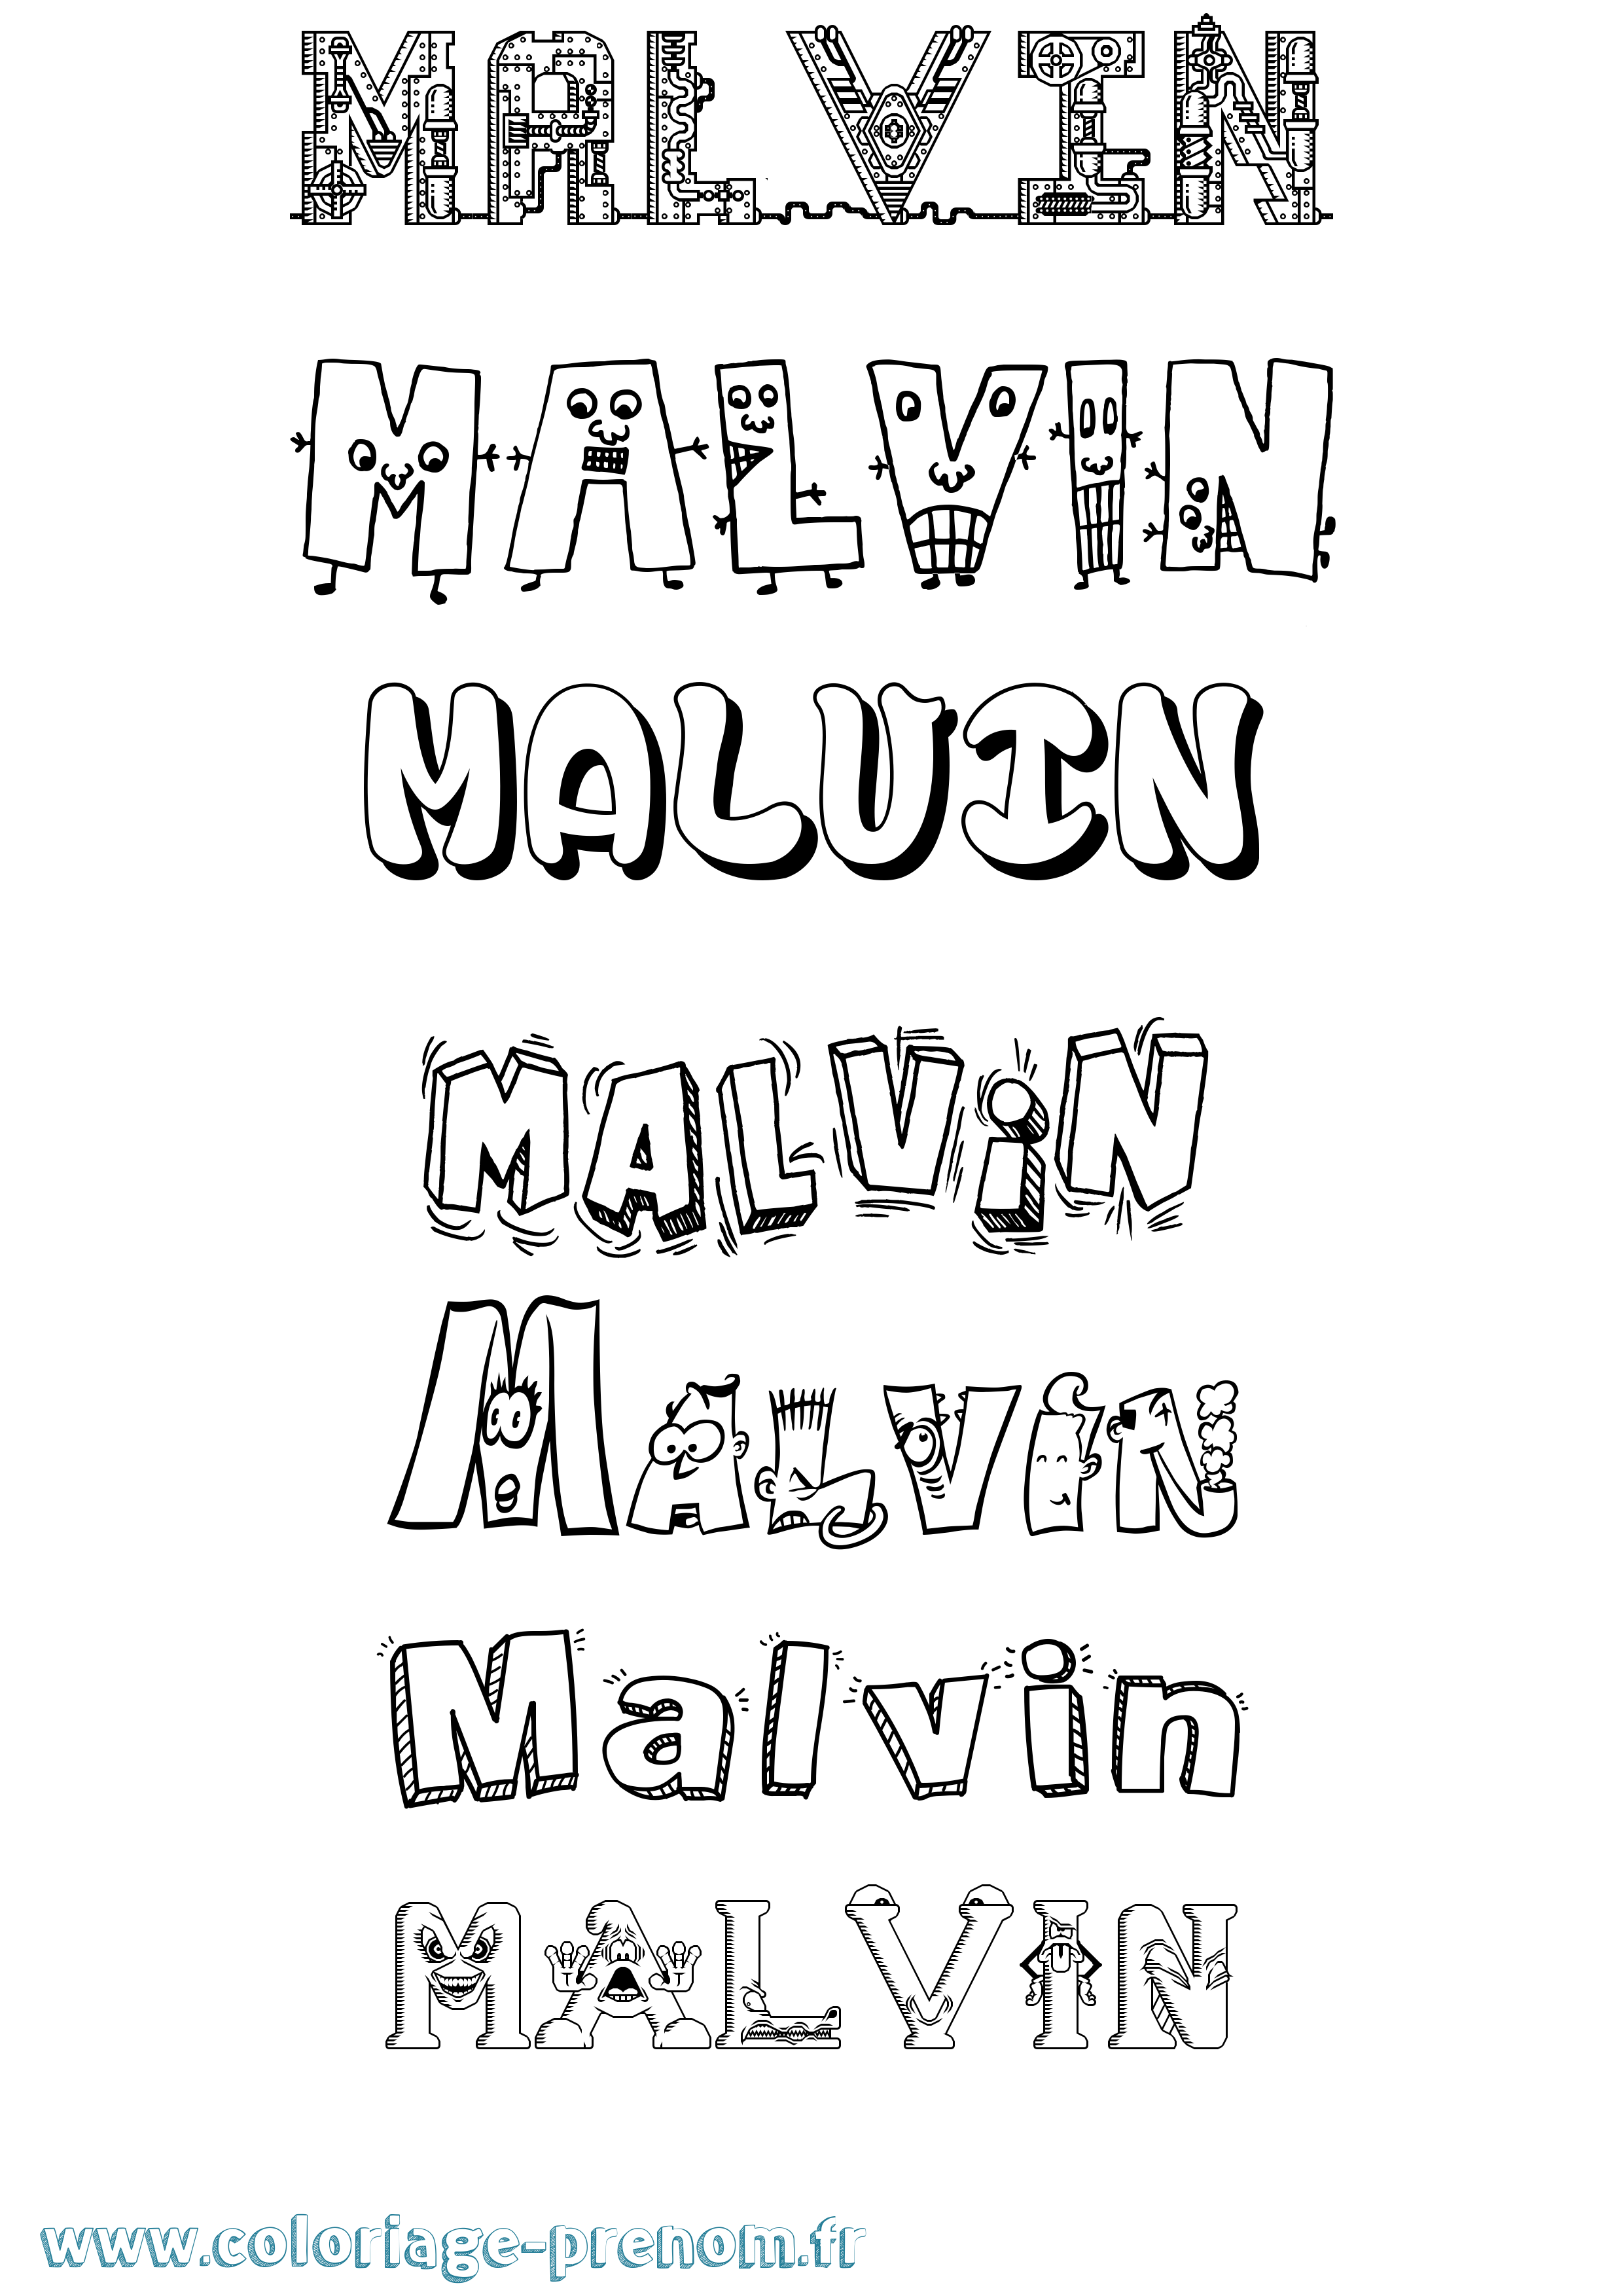 Coloriage prénom Malvin Fun